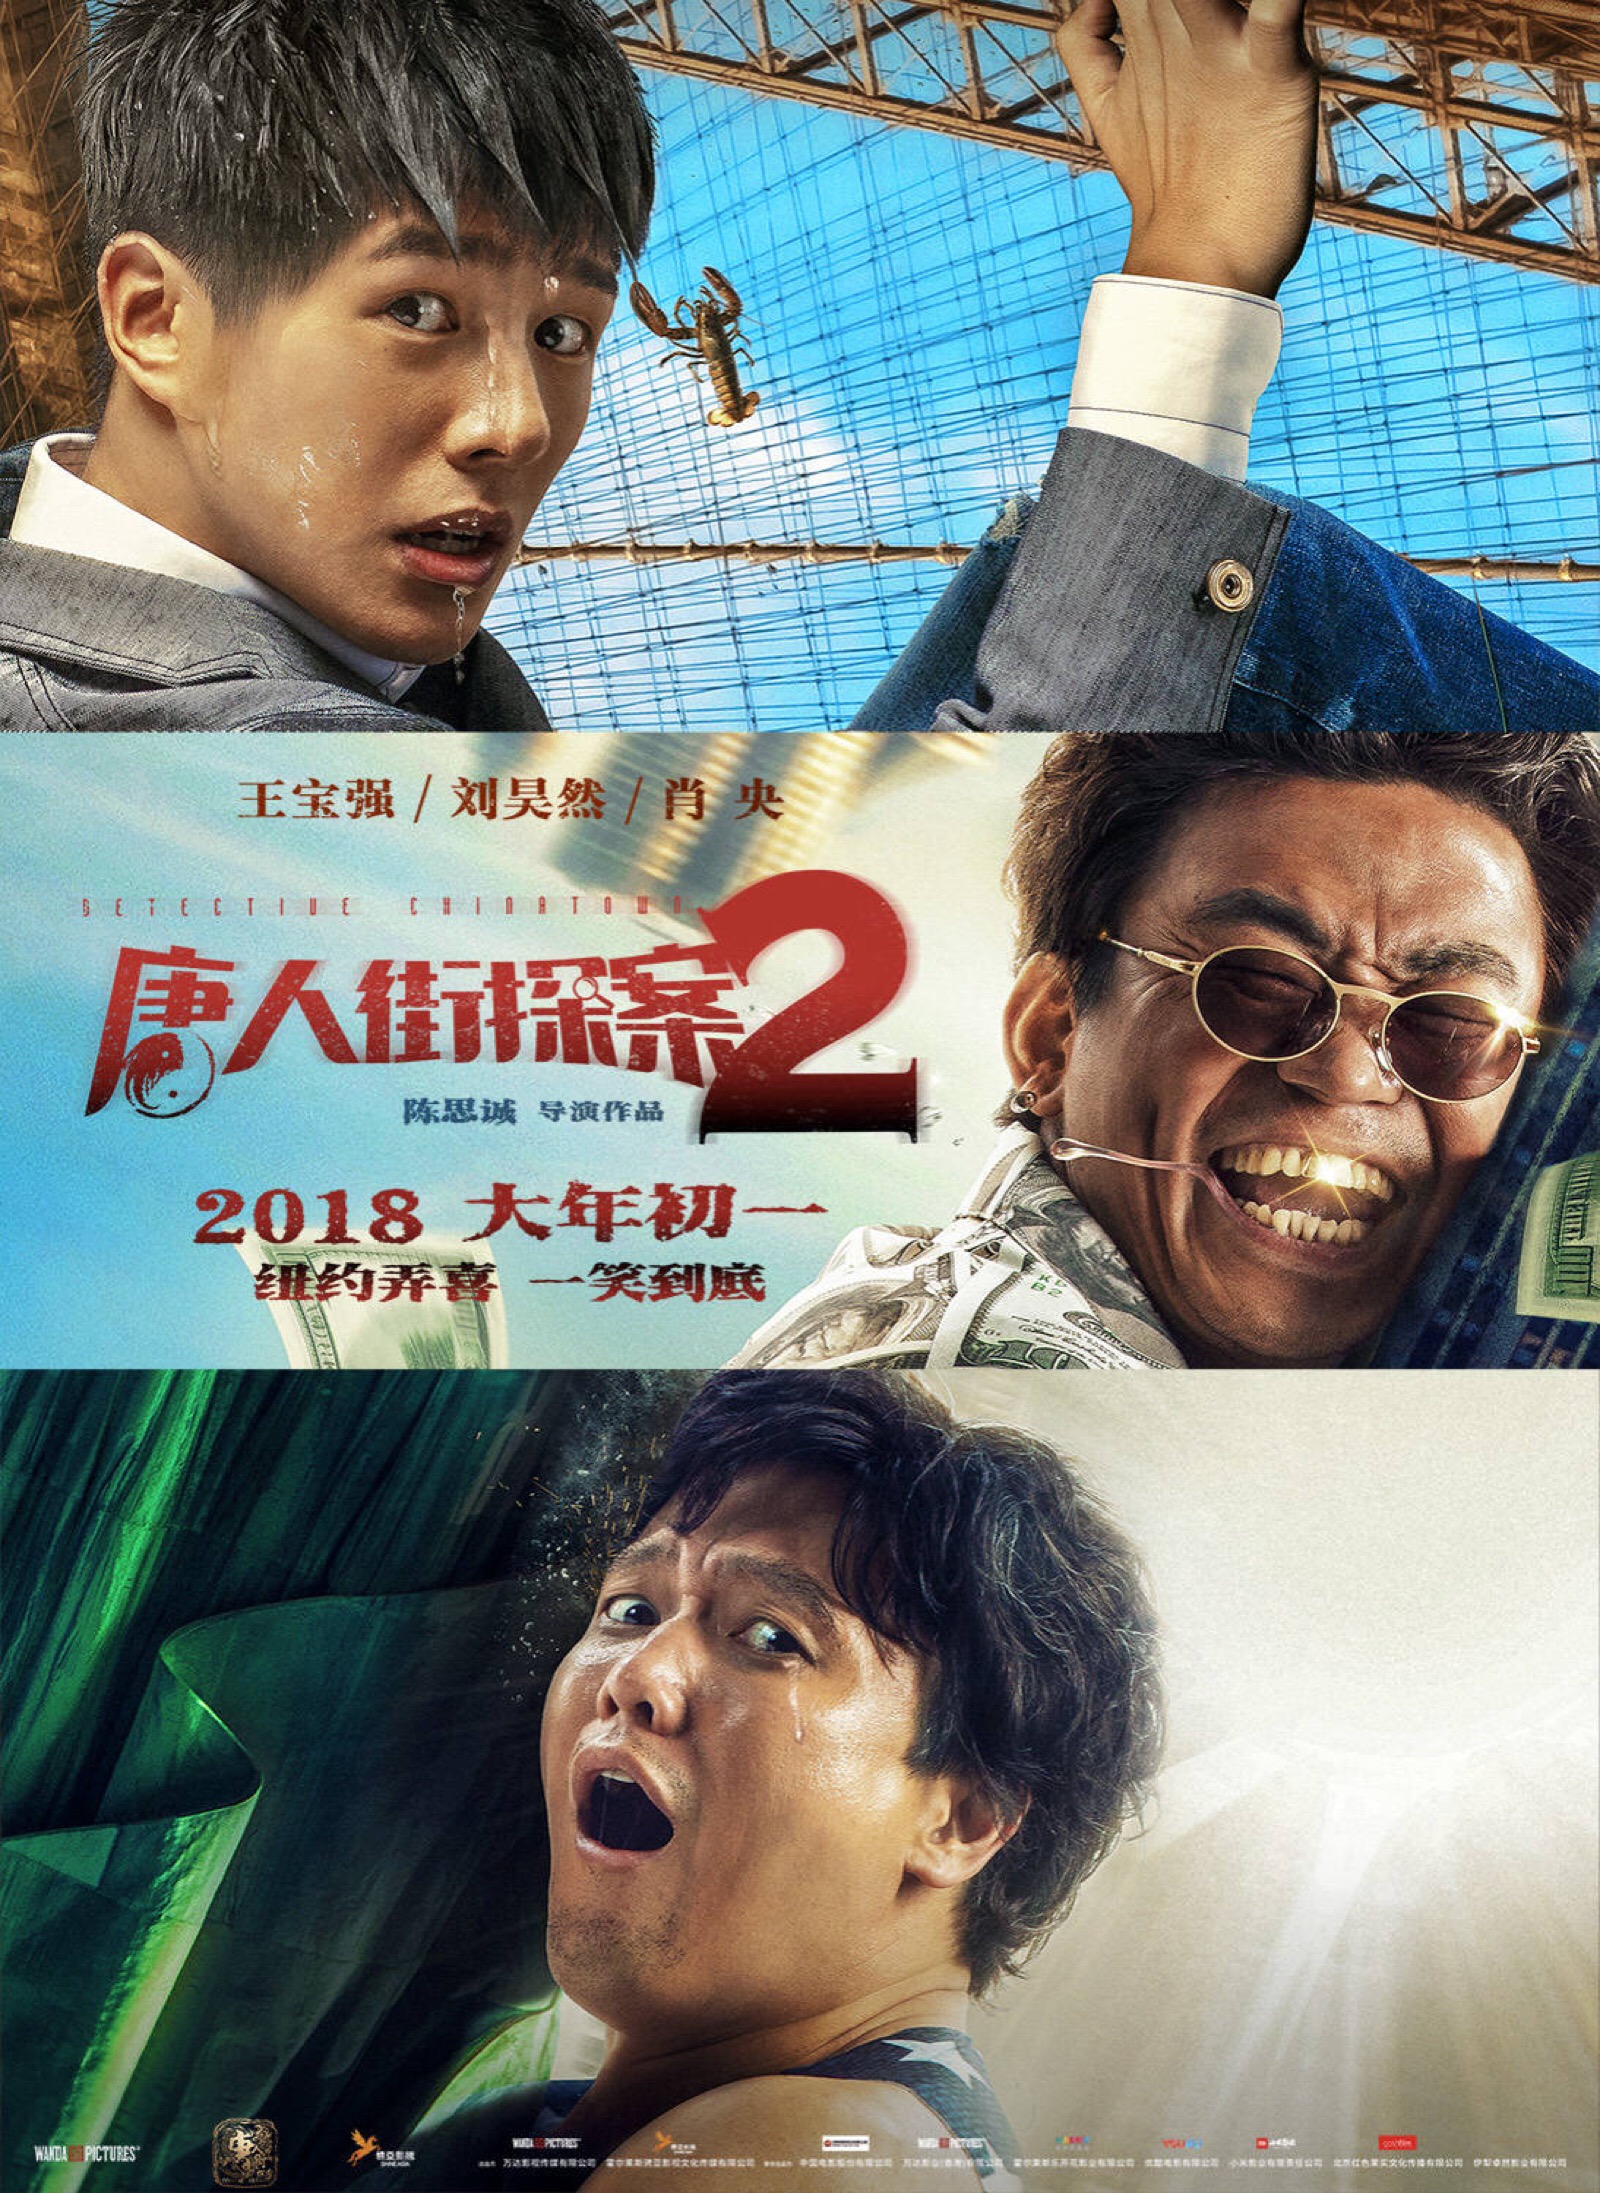 《唐人街探案2》是唐人街探案系列电影的第二辑,由陈思诚执导,王宝强